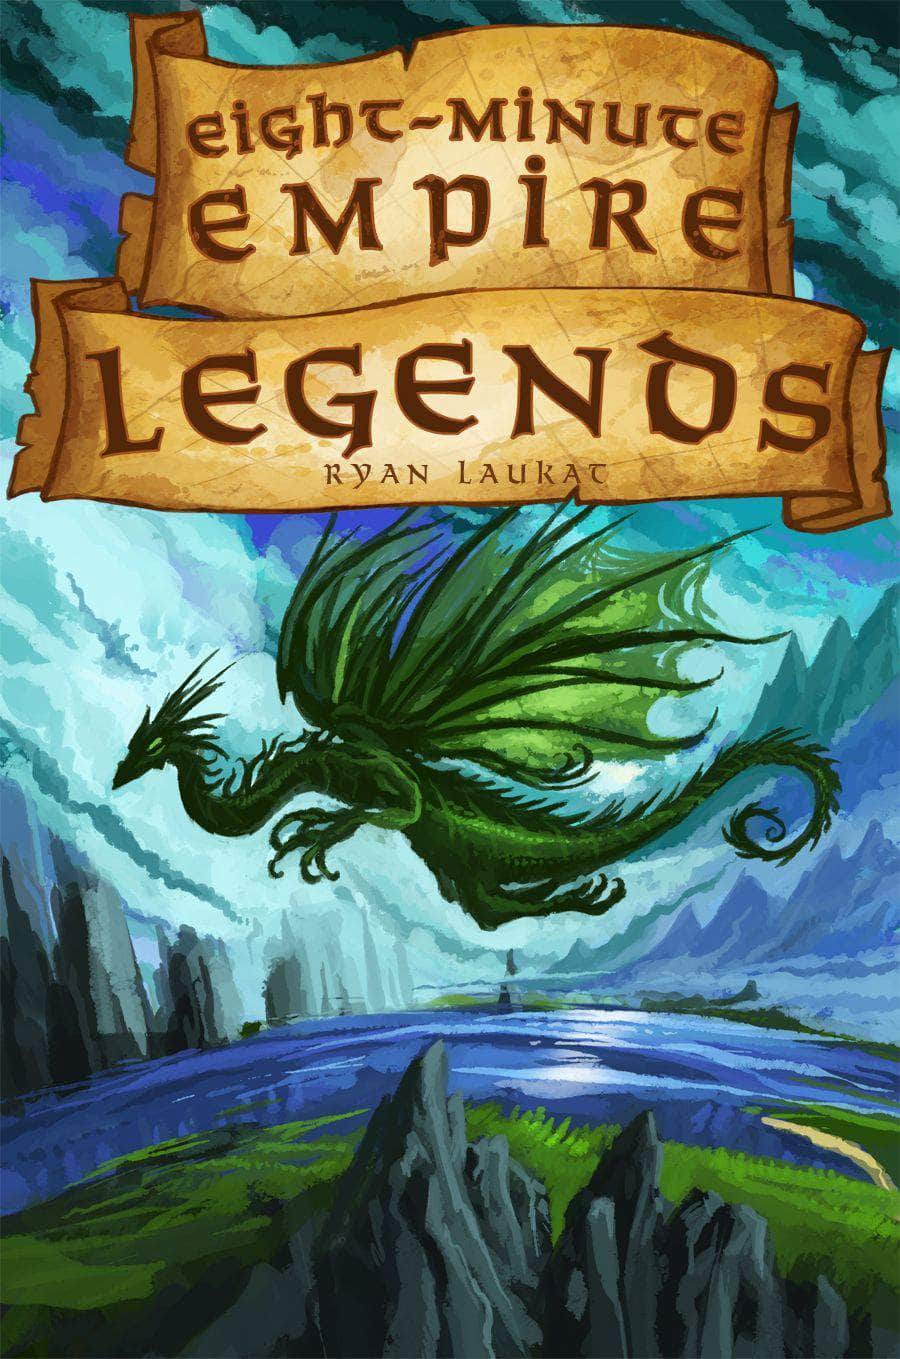 Åtta minuters Empire: Legends (Kickstarter Special) Kickstarter brädspel Red Raven Games KS800067A